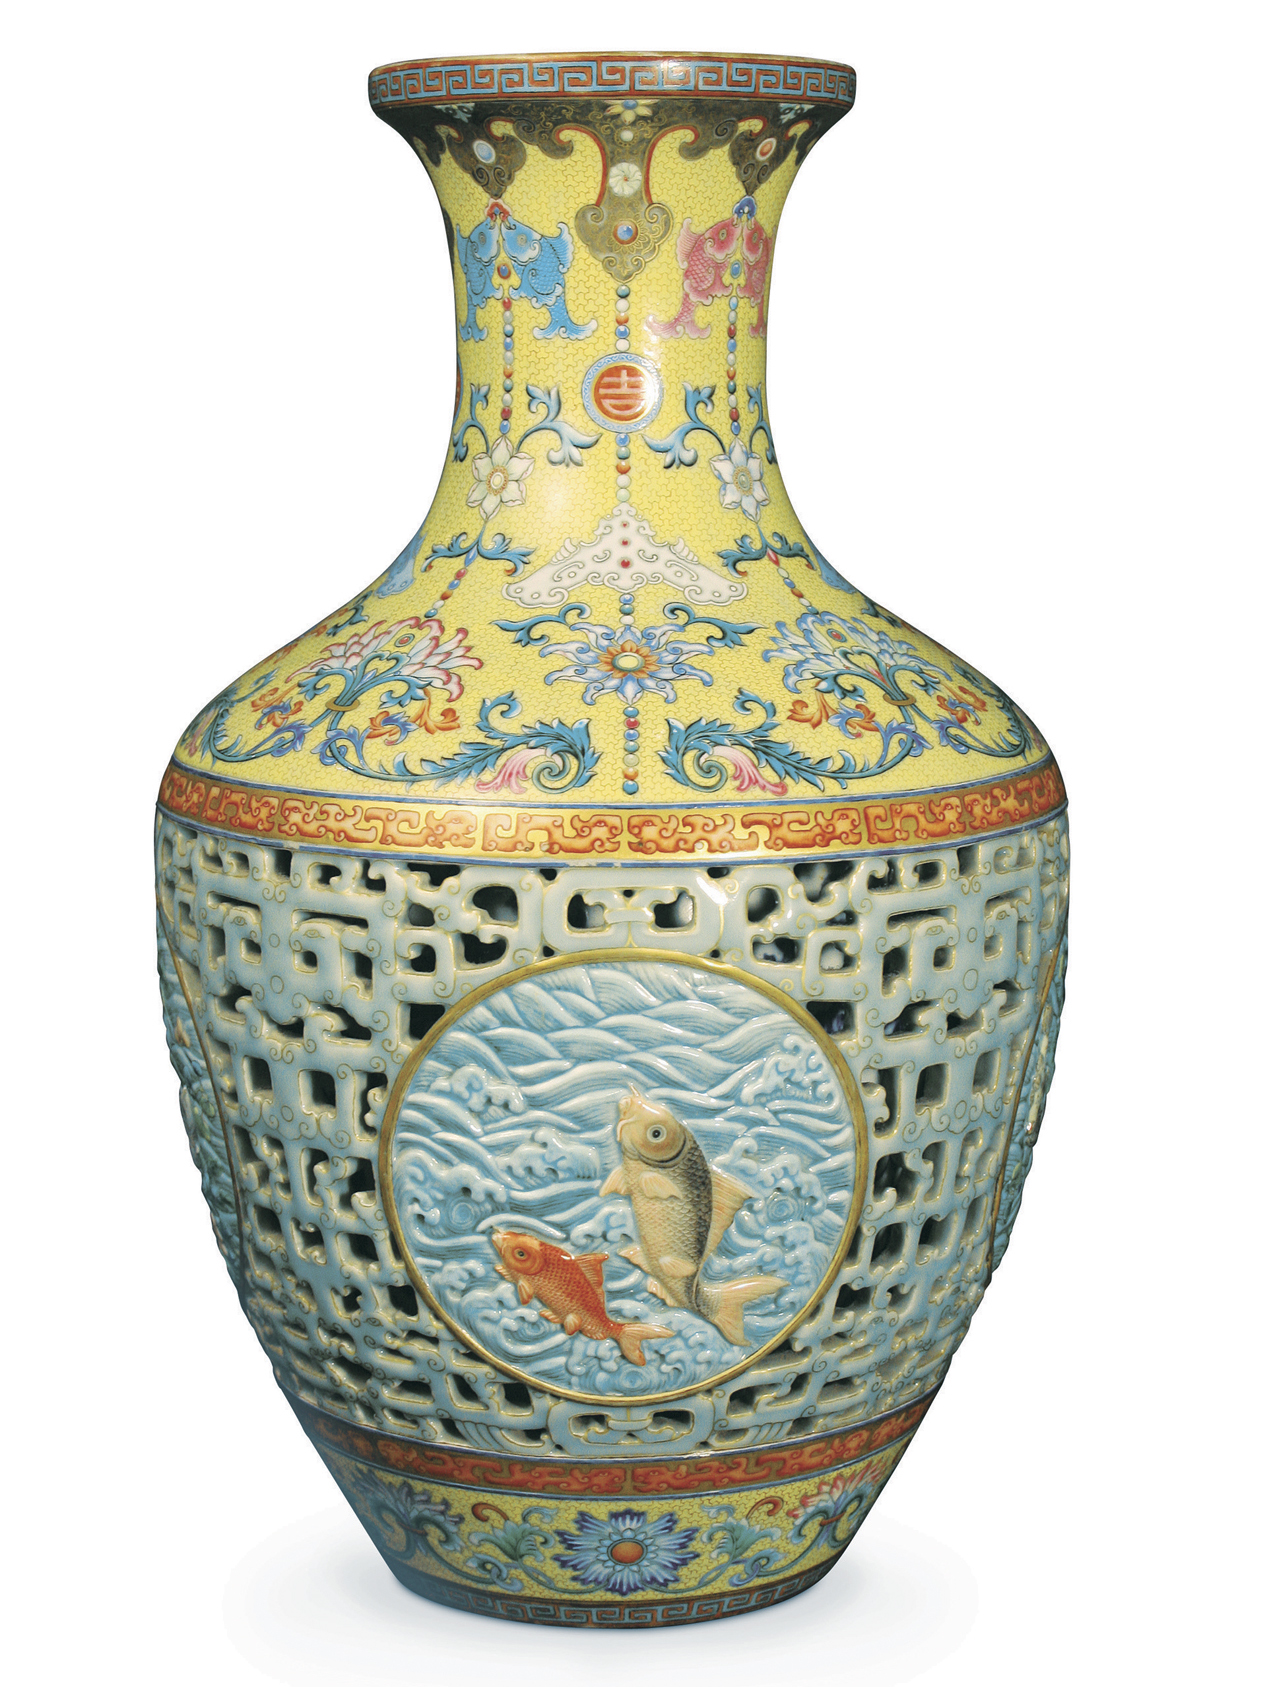 アジア製美術品で最高値の花瓶、半値以下で売却－不払いの末 - Bloomberg